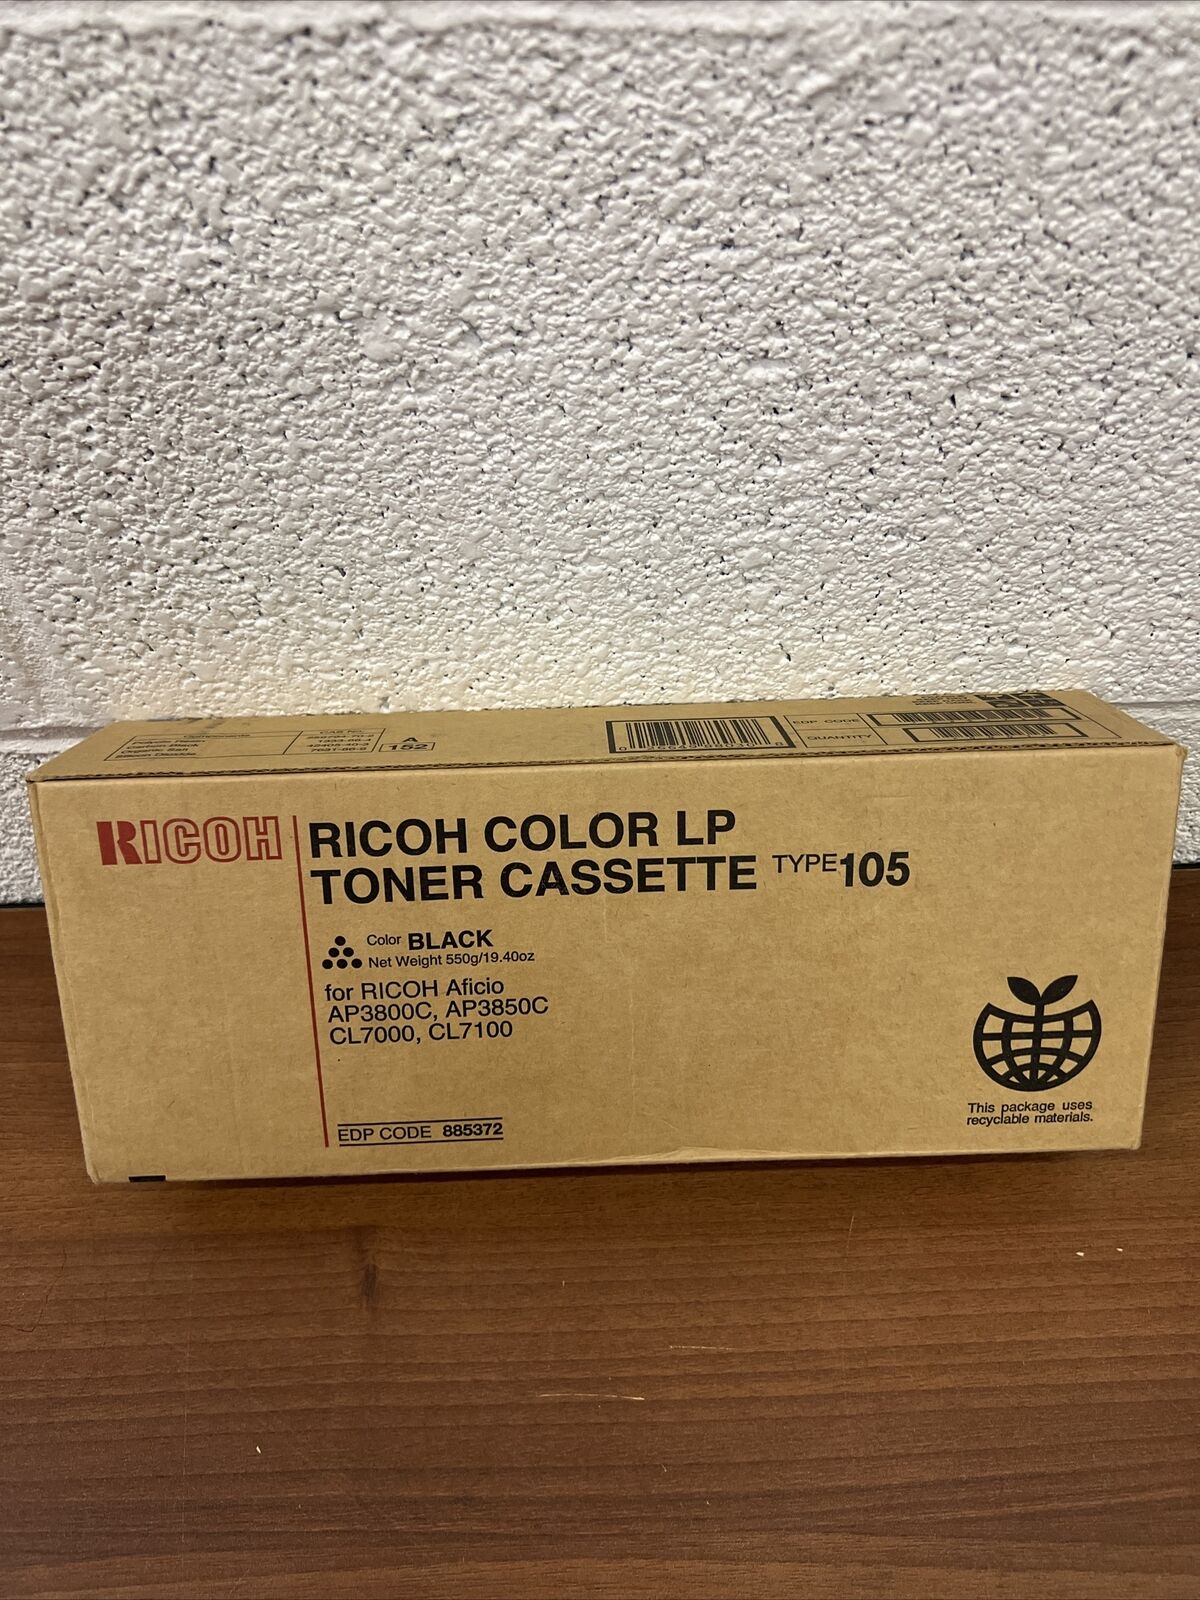 Genuine Ricoh EPD CODE 885372 Color LP Toner Cassette Type 105 BLACK